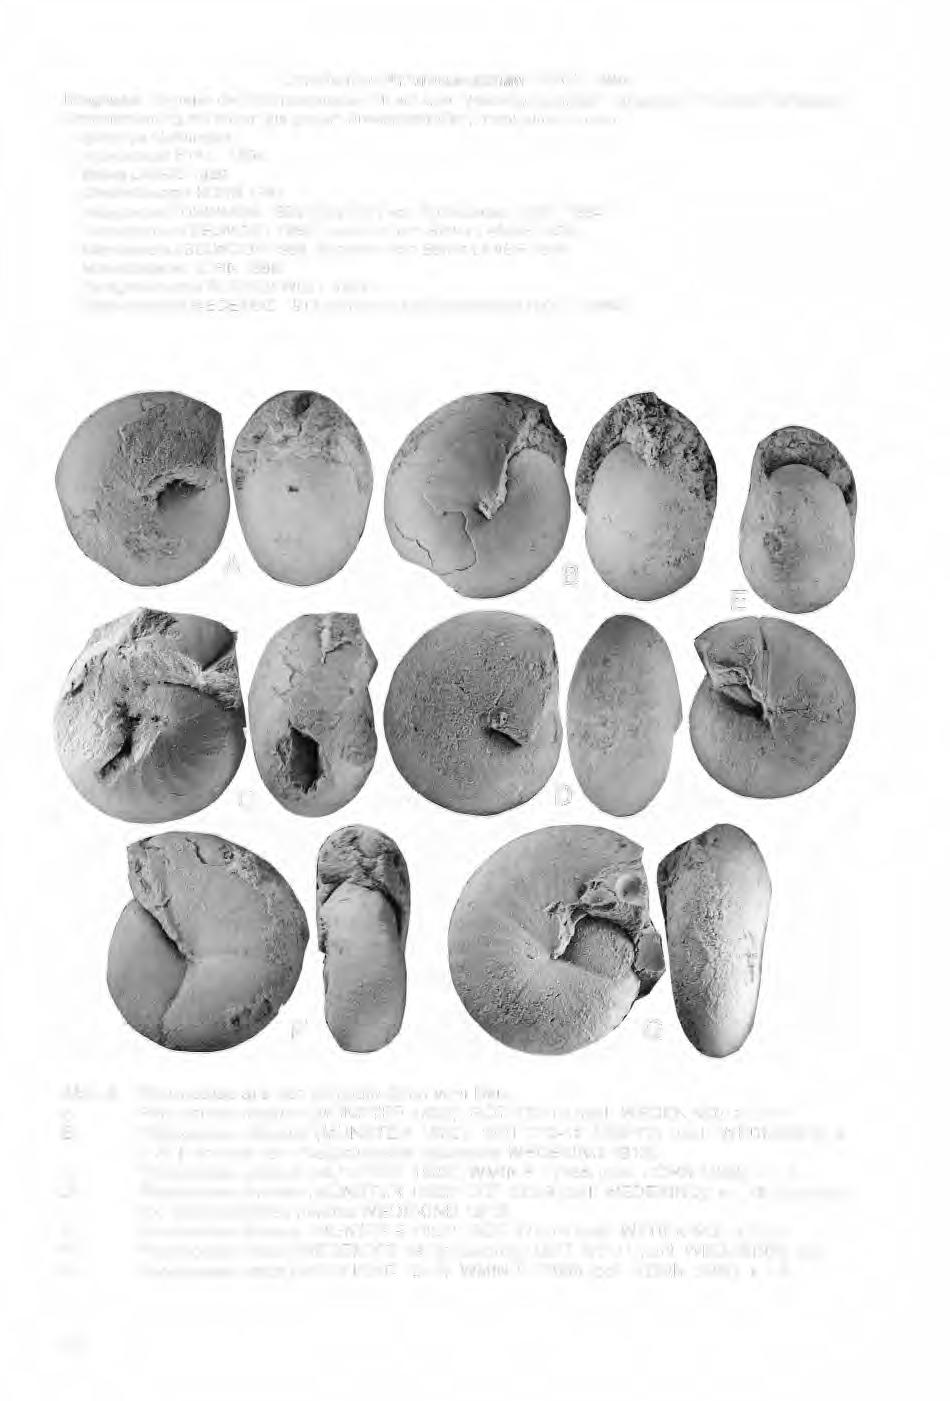 / Unterfamilie Prionoceratinae HYATT 1884 Diagnose: Vertreter der Prionoceratidae mit auf allen Wachstumsstadien weitgehend involuten Gehäusen.